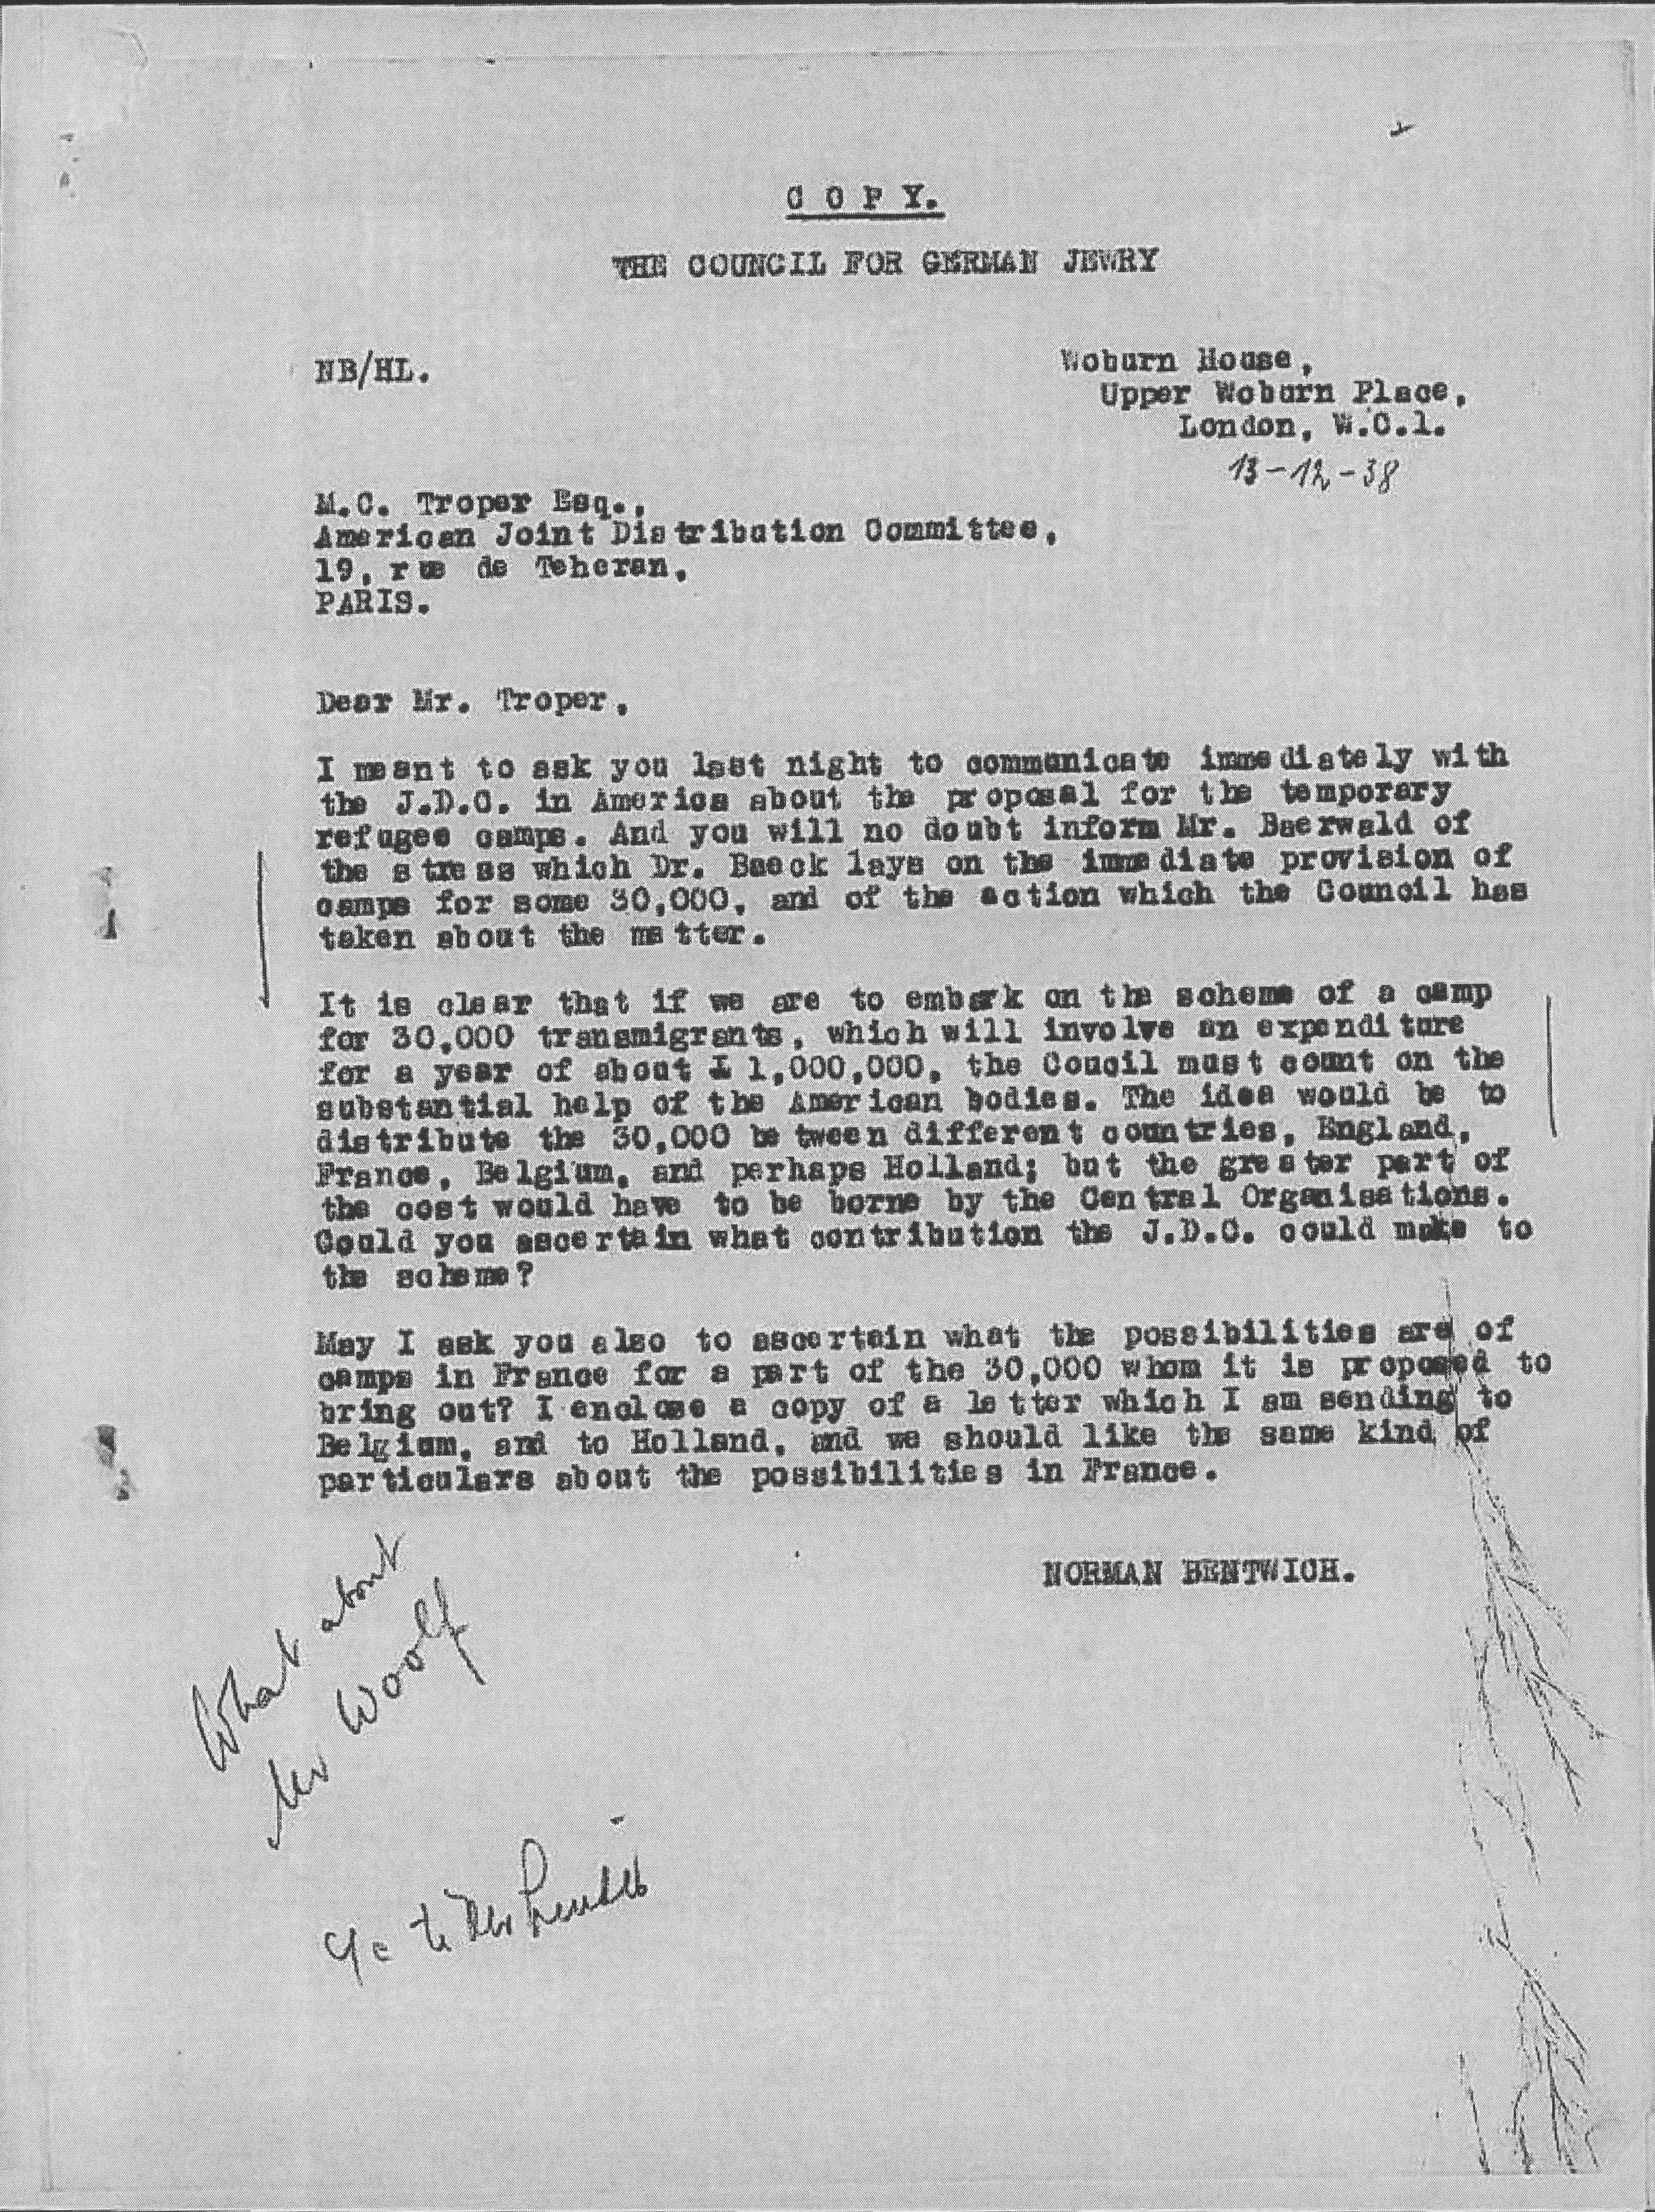 Kitchener camp, Council for German Jewry, Letter, Woburn House, Mr Troper, Dr Baeck, Mr Woolf, 13 December 1938